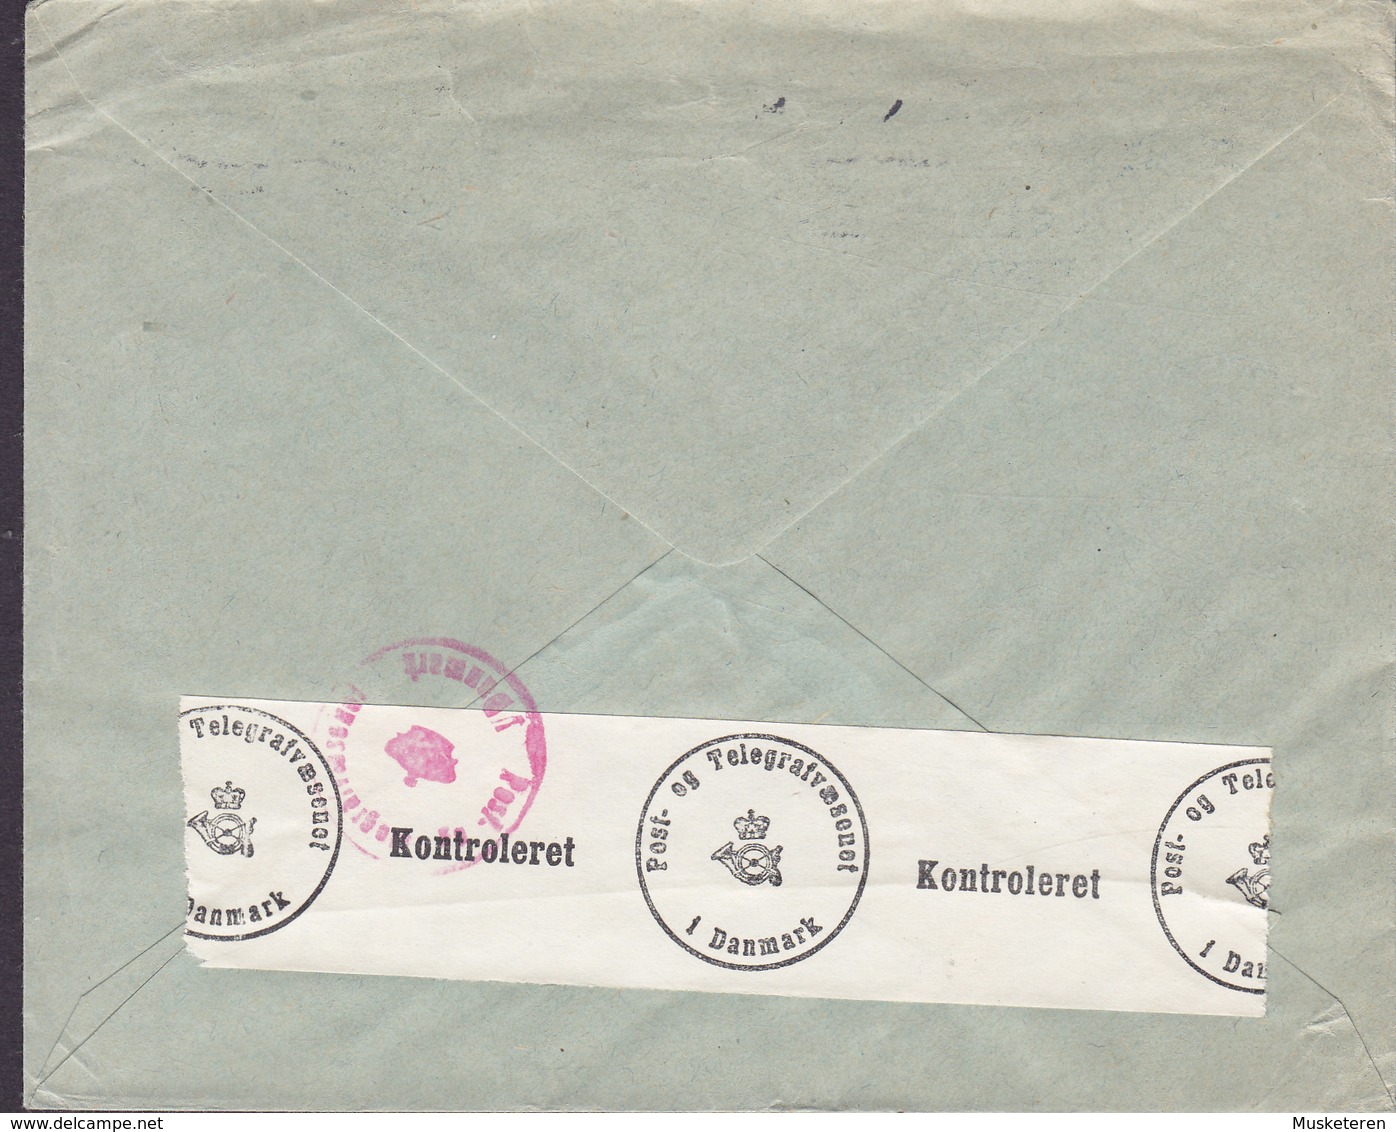 Denmark DAFAMETA, KØBENHAVN 1941 Cover Brief P & T KONTROLERET Censor Zensur Label Stamps ERROR Variety Misplaced Print - Variétés Et Curiosités